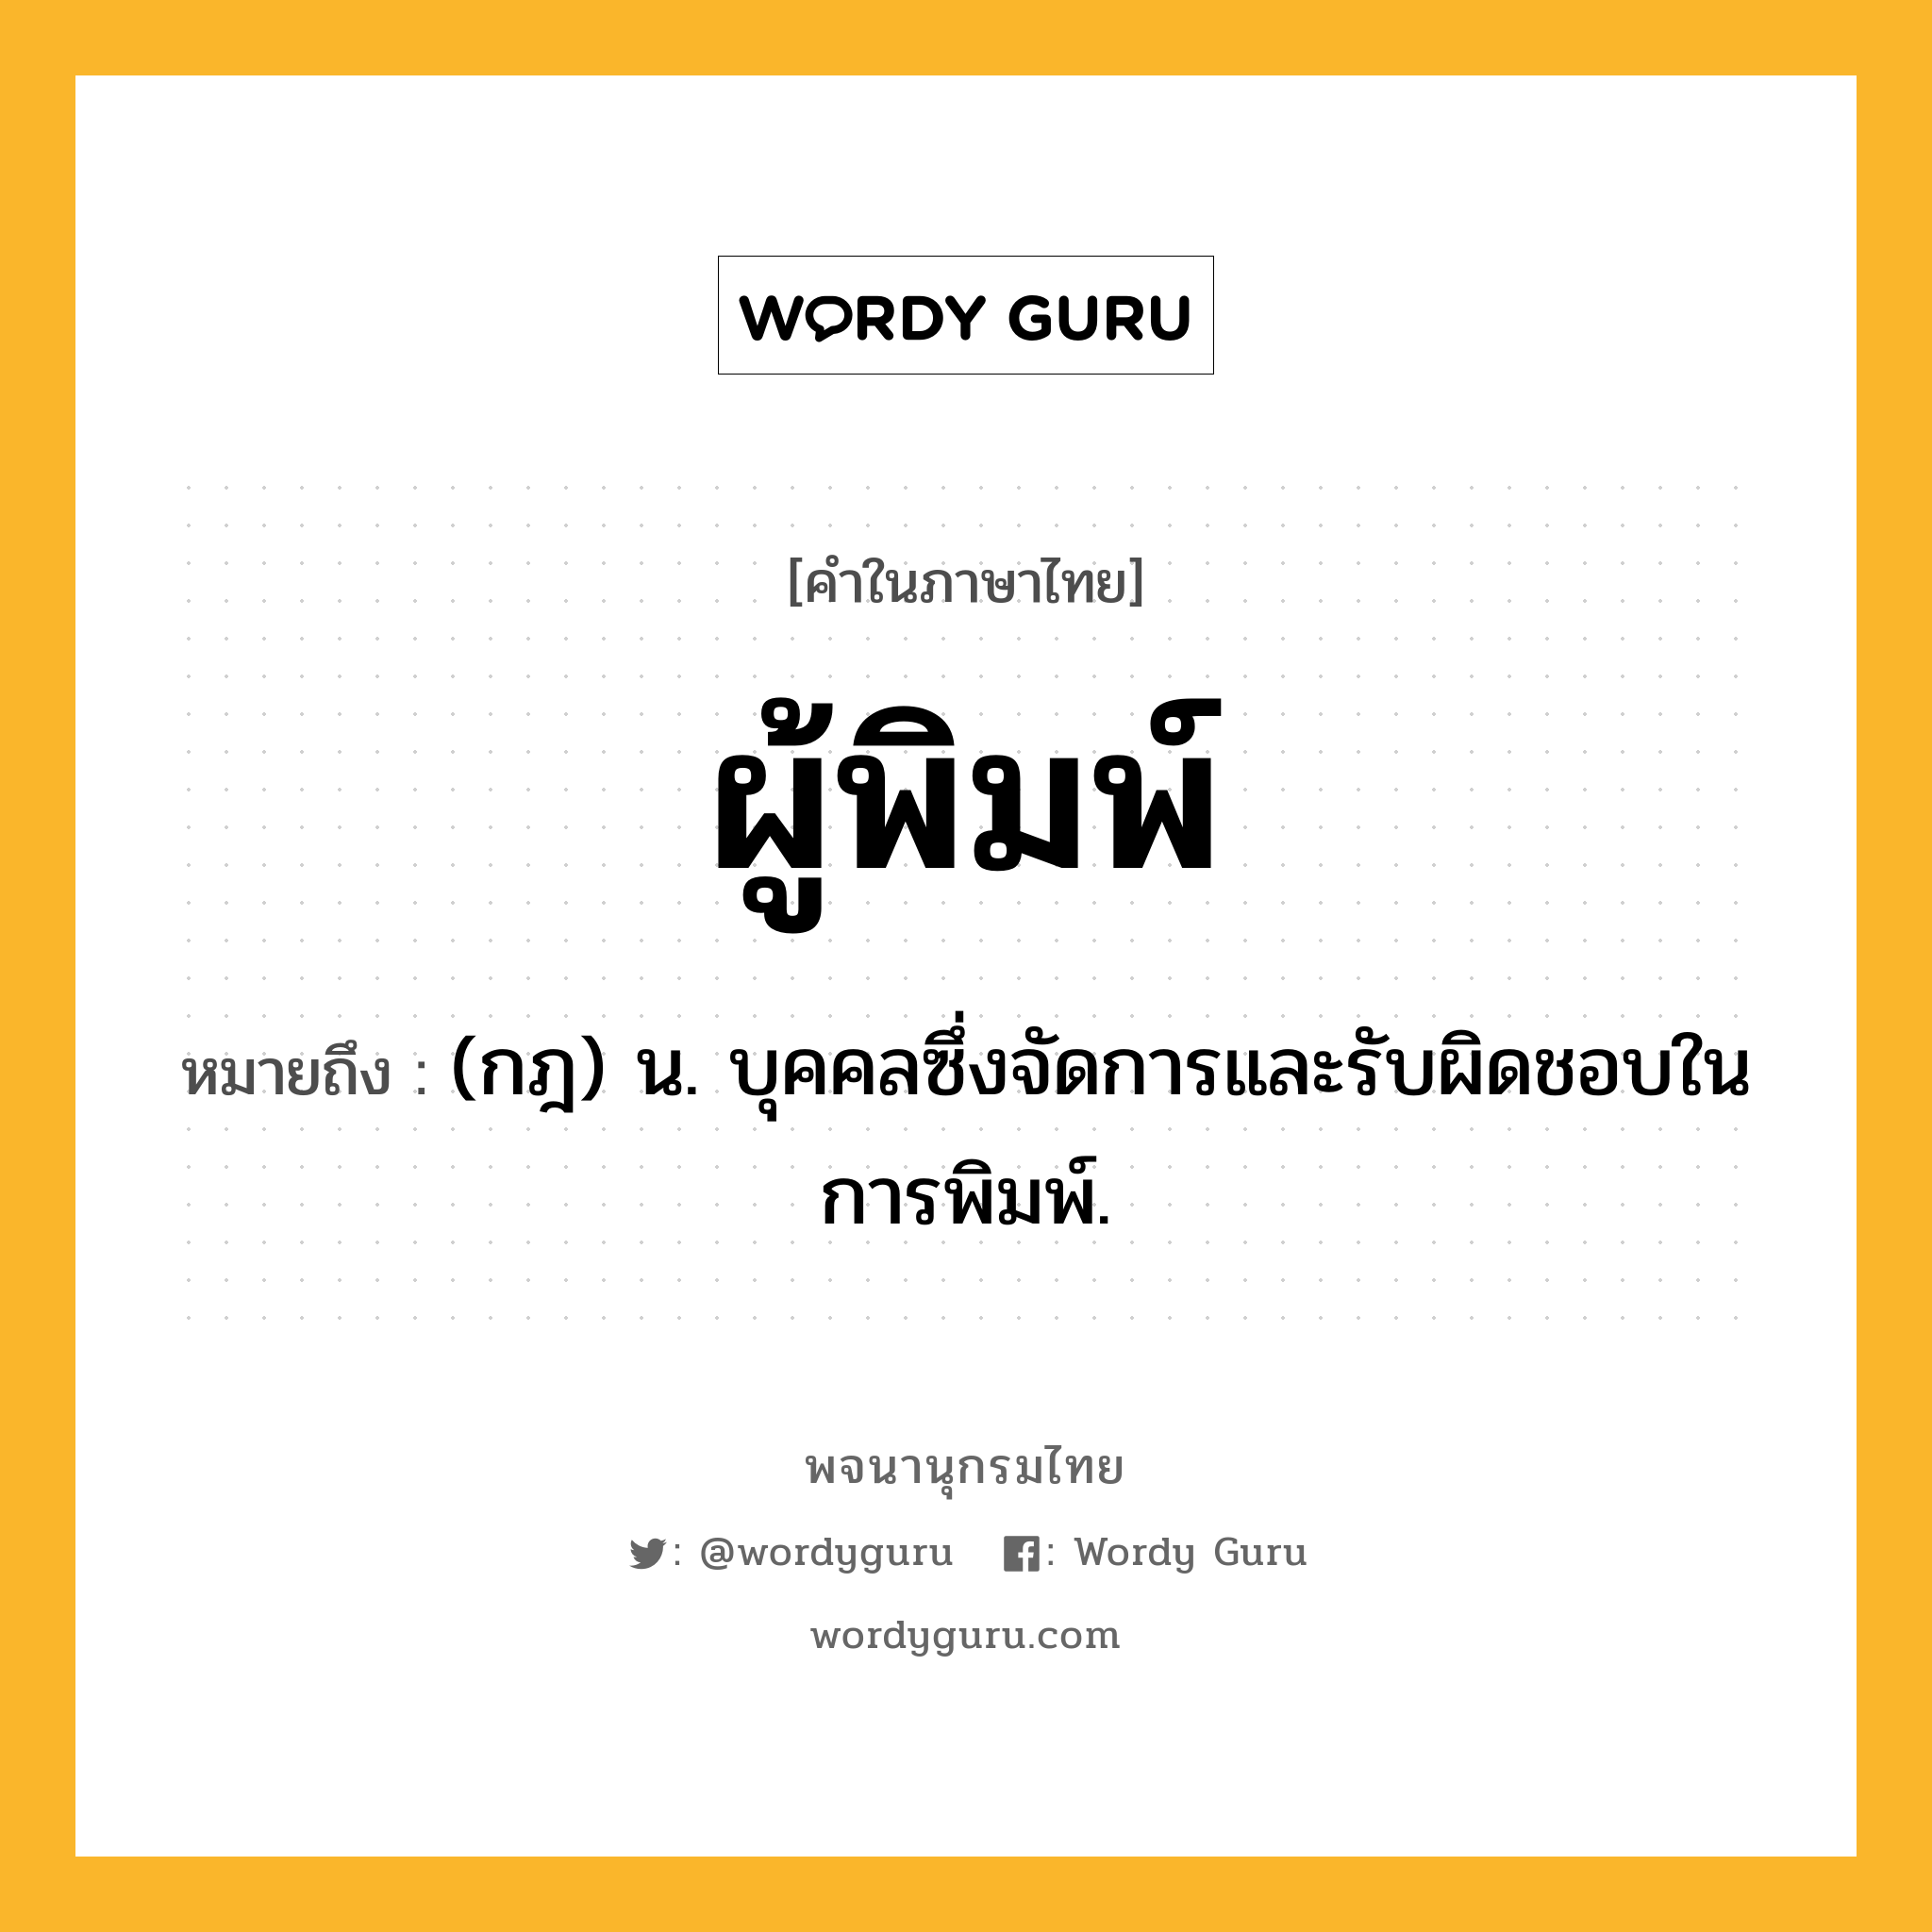 ผู้พิมพ์ ความหมาย หมายถึงอะไร?, คำในภาษาไทย ผู้พิมพ์ หมายถึง (กฎ) น. บุคคลซึ่งจัดการและรับผิดชอบในการพิมพ์.